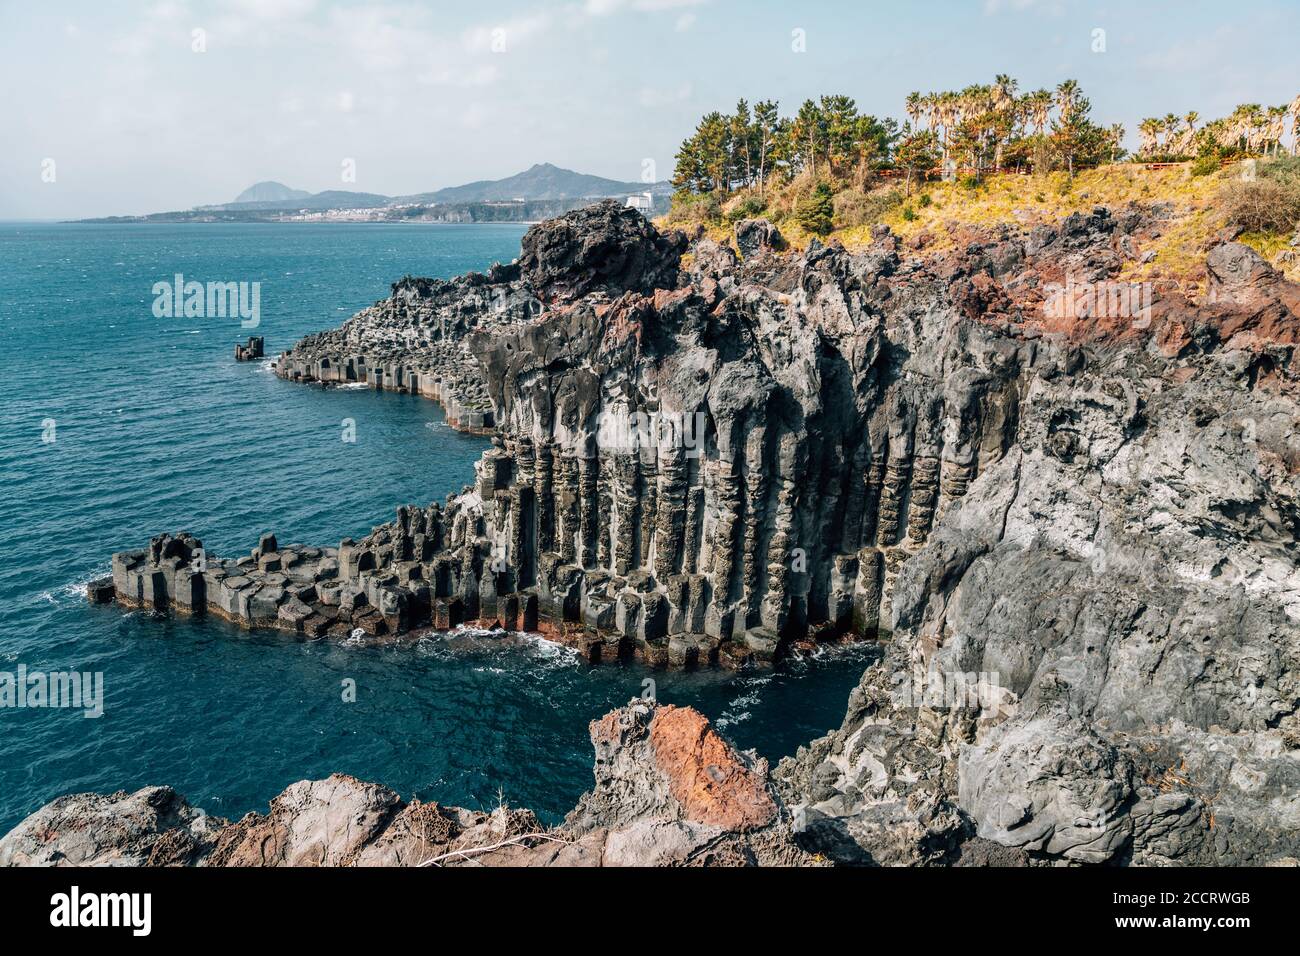 Daepo Jusangjeolli Cliff säulig Gelenke und Meer auf der Insel Jeju, Korea Stockfoto